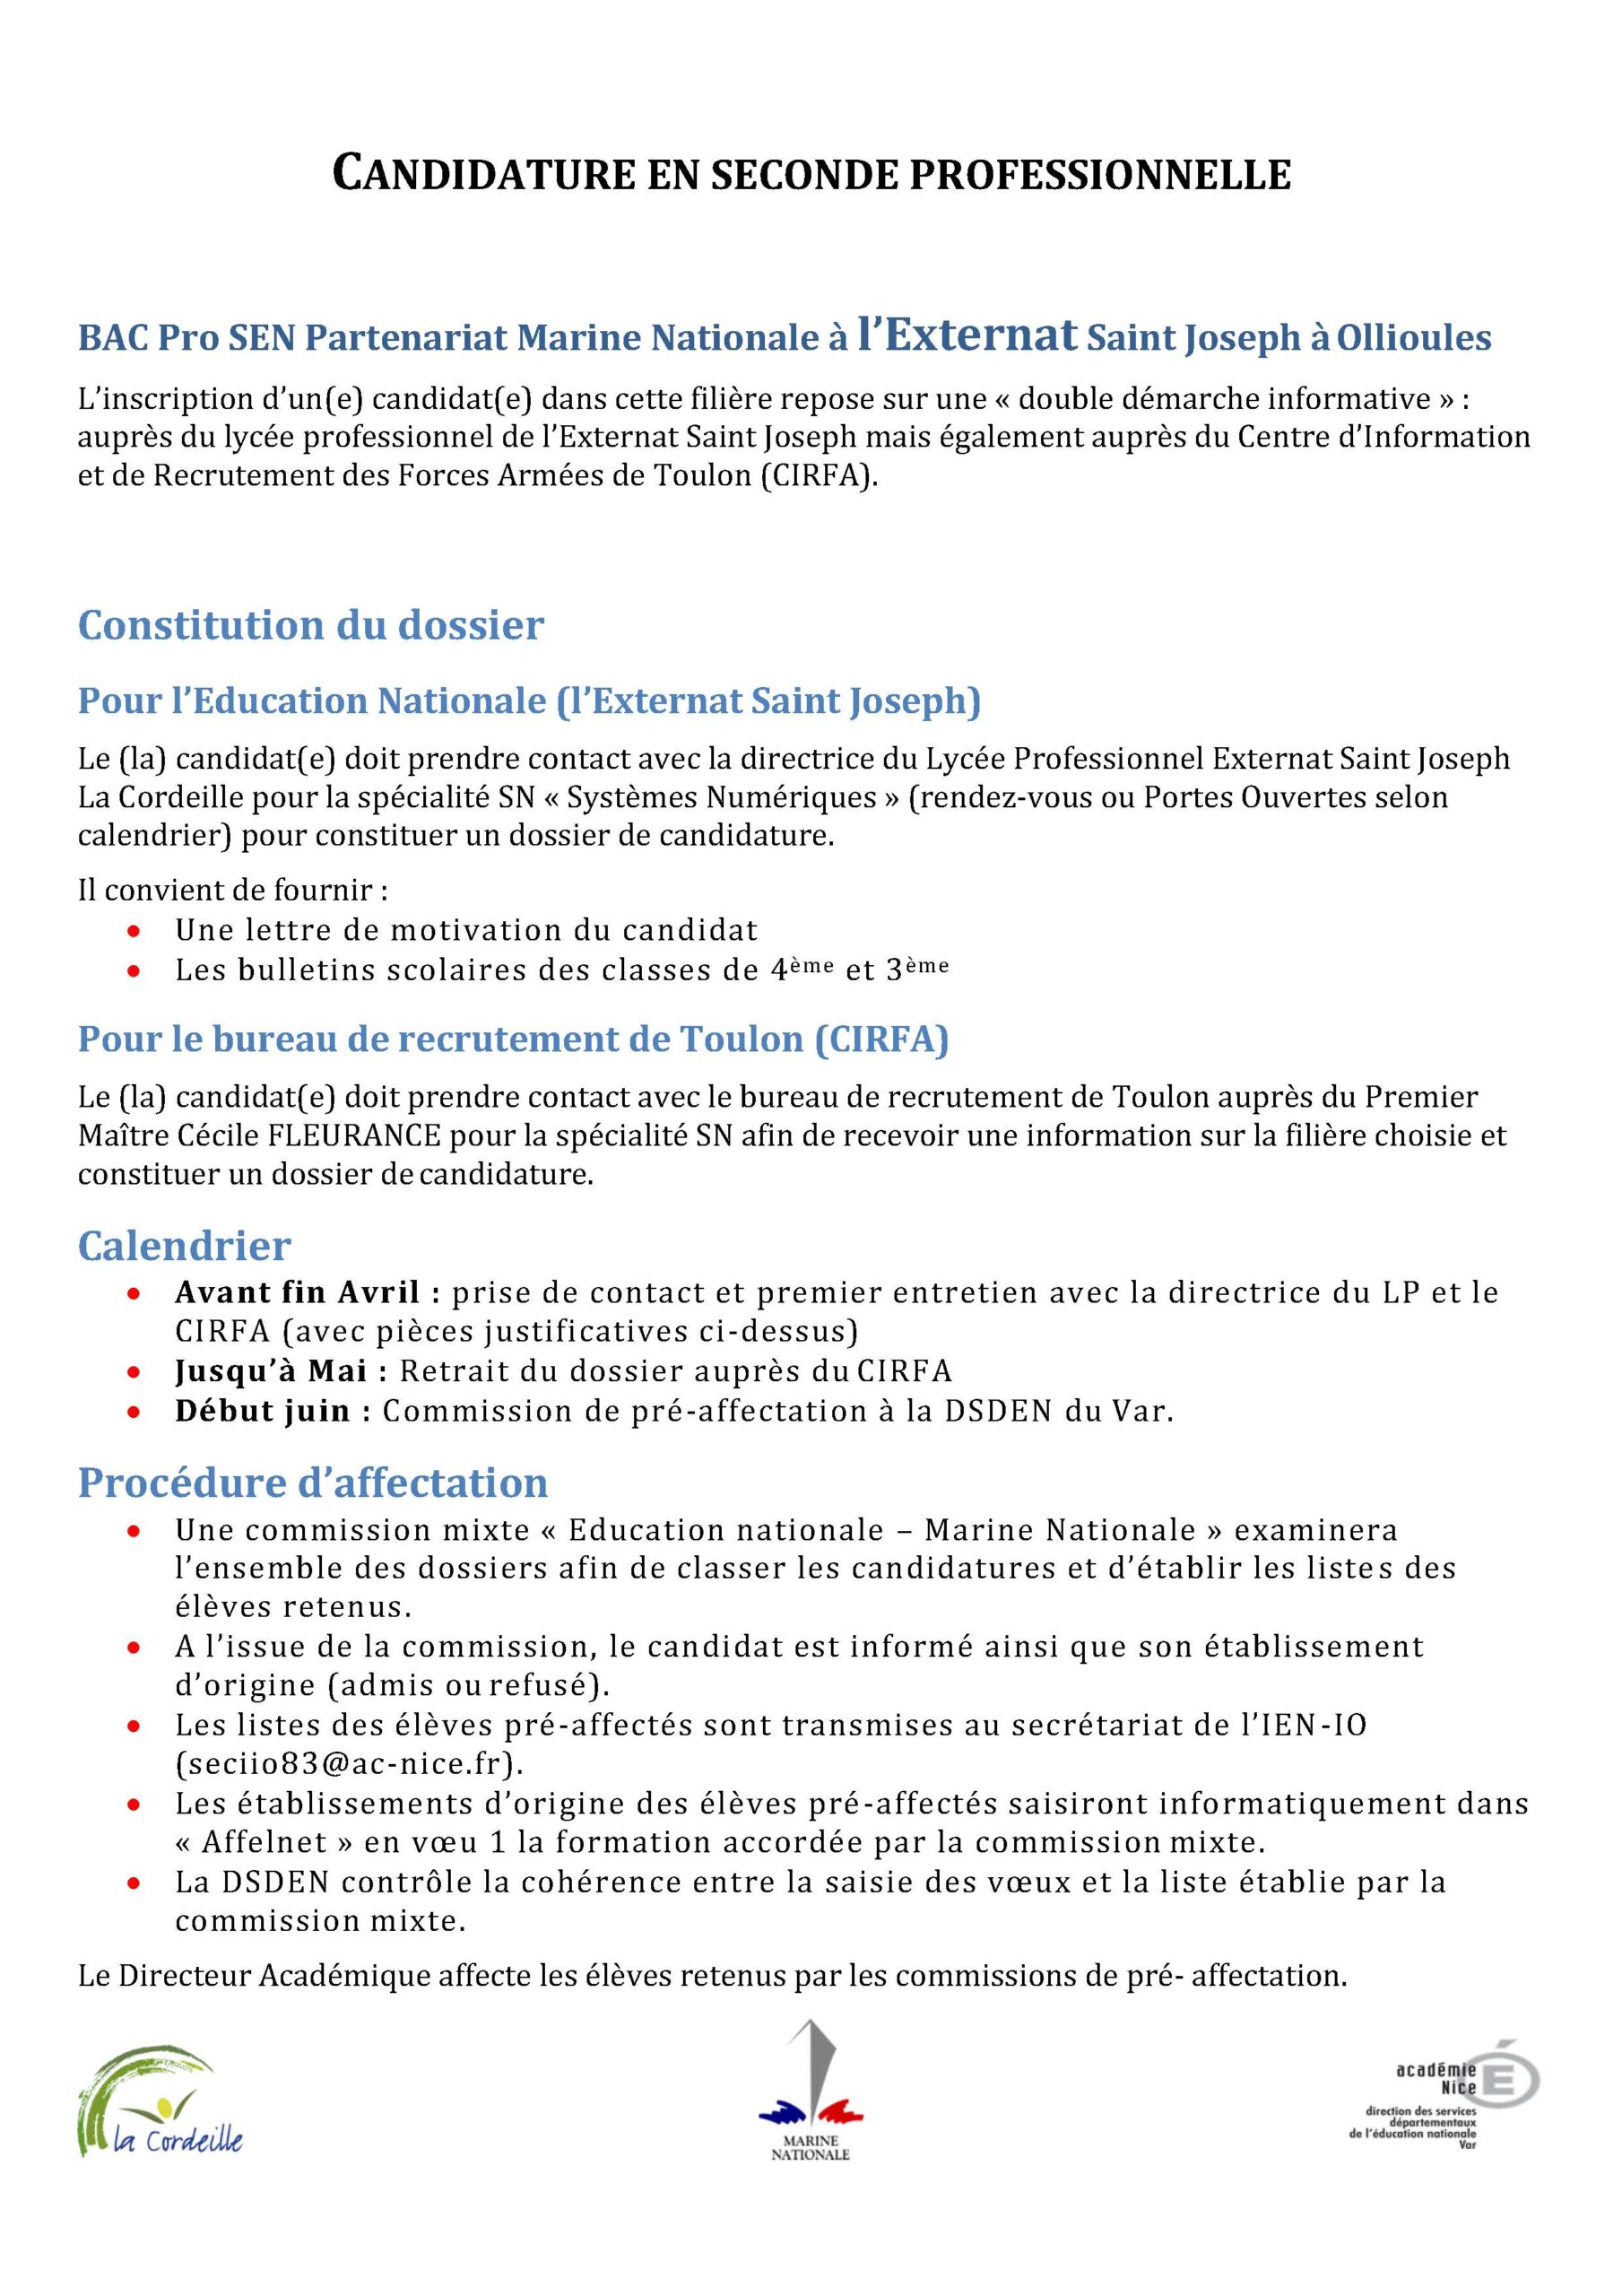 Candidature en seconde professionnelle Lycée pro ESJ-La Cordeille